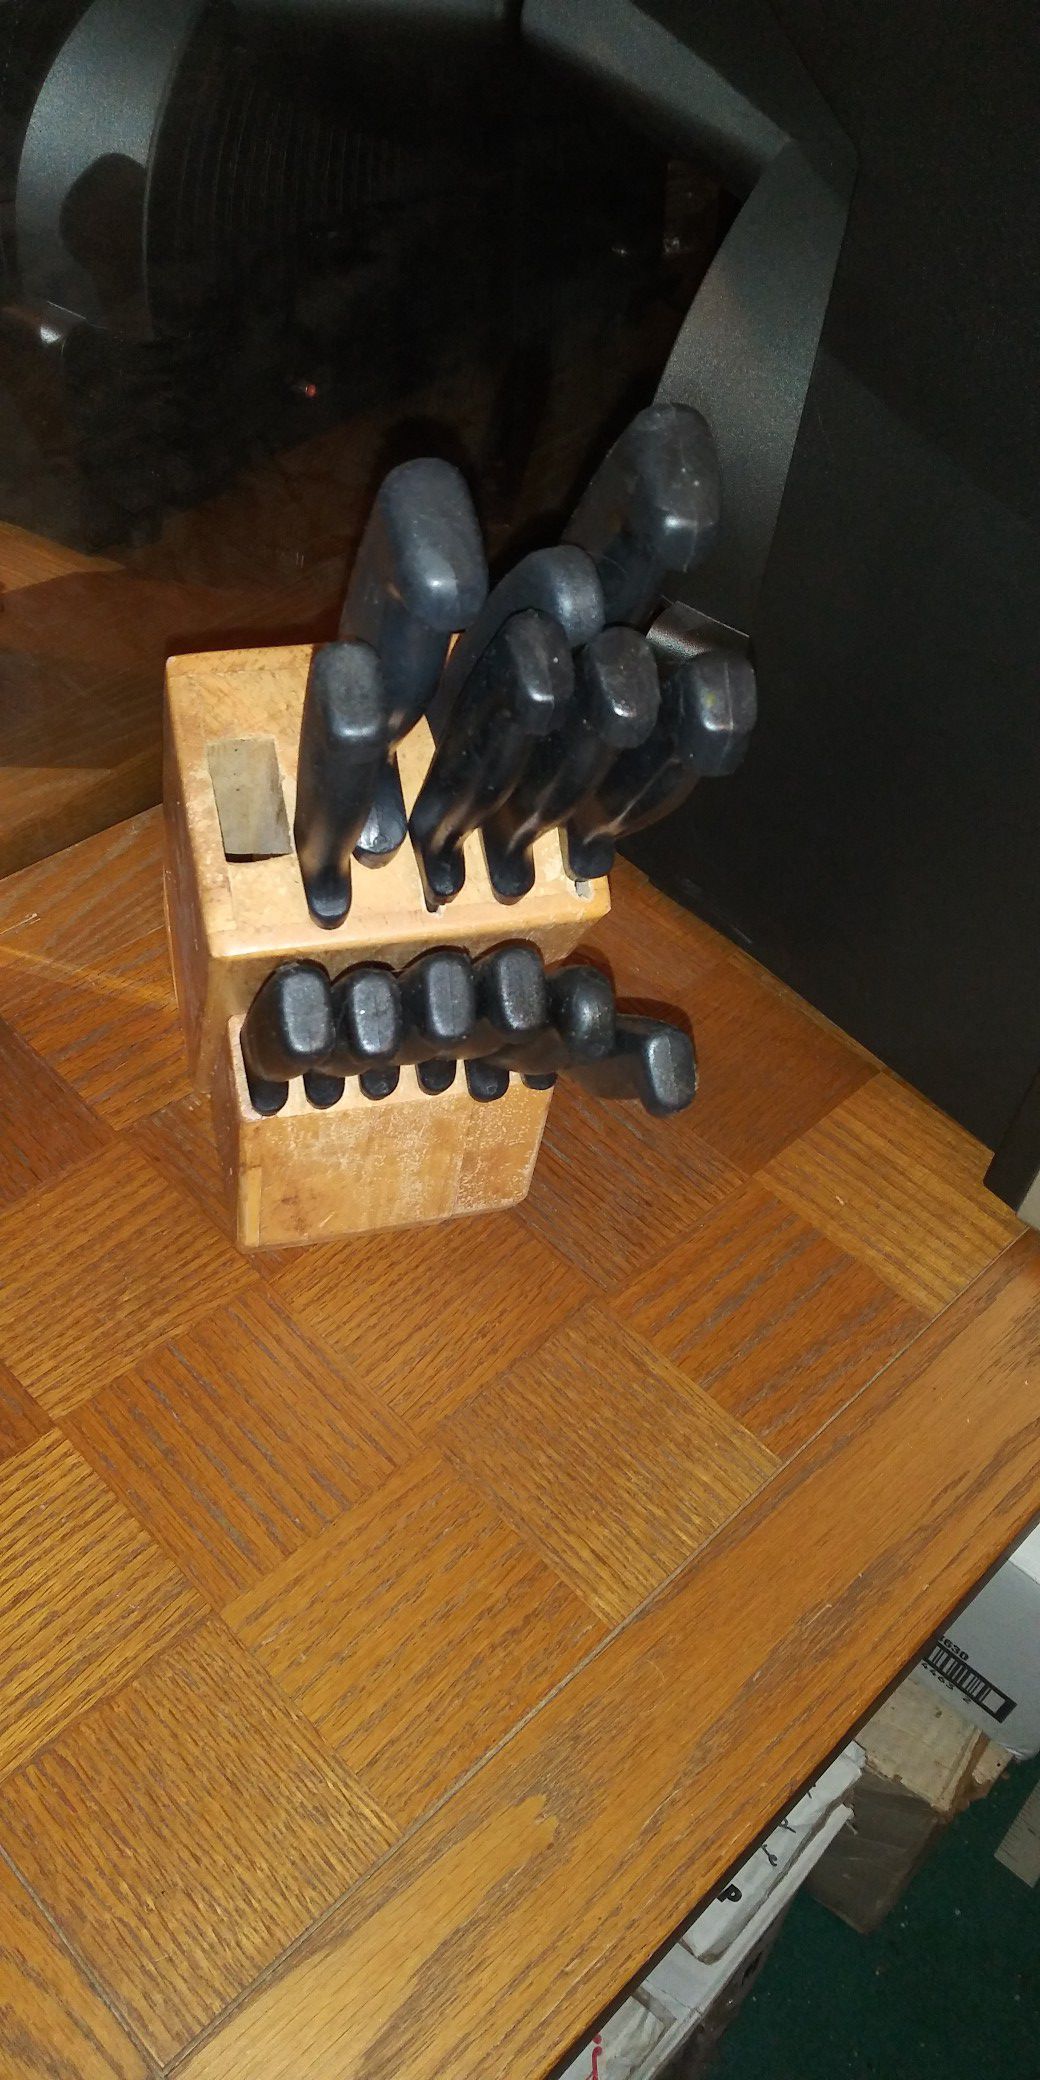 Set of knifes in wood block